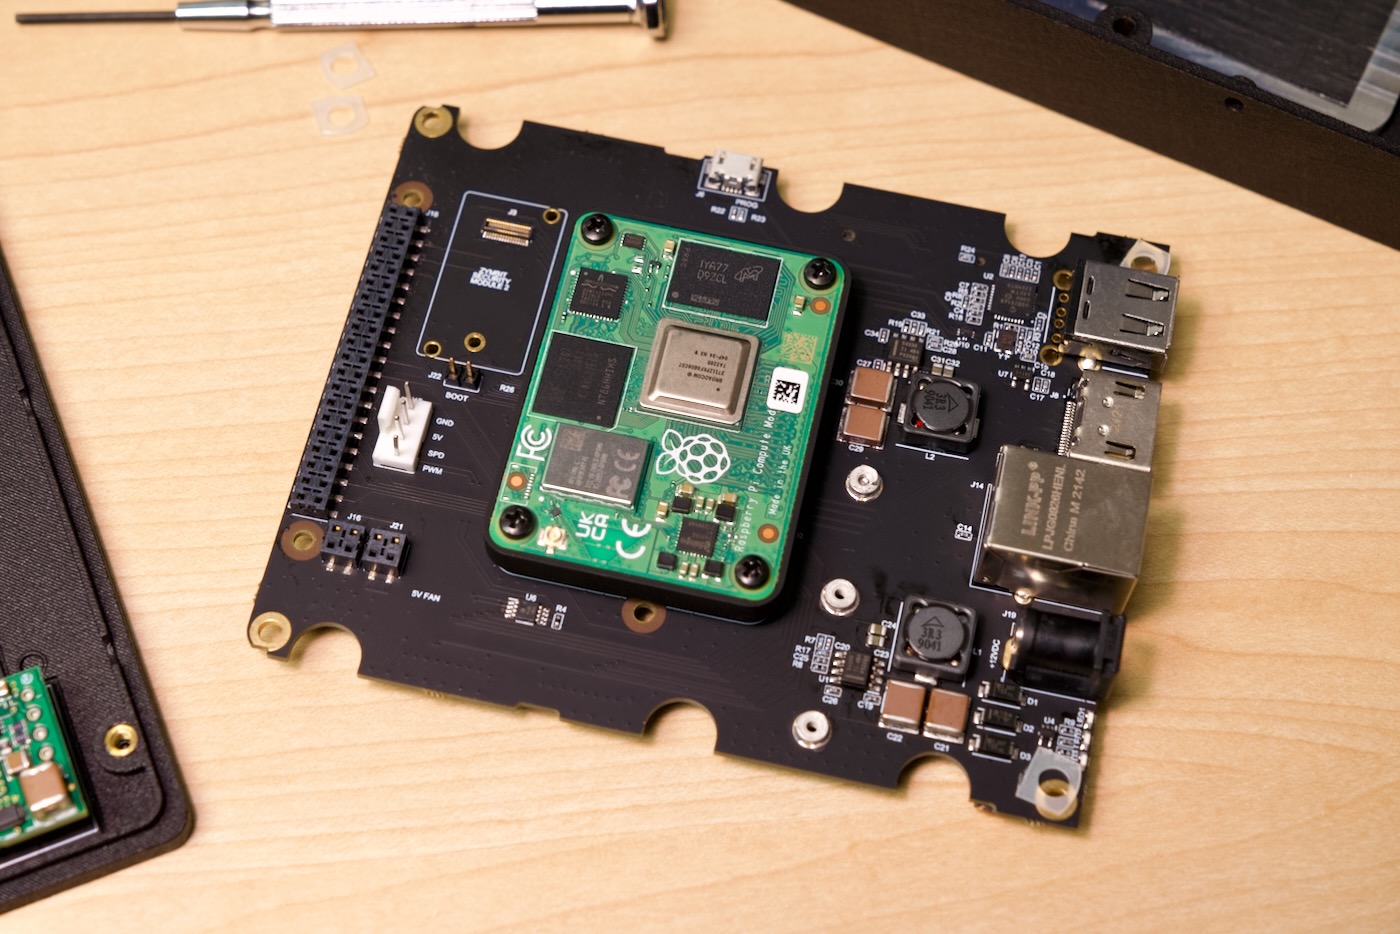 Zymbit Secure Compute Node D35 - internals with SCM Raspberry Pi CM4